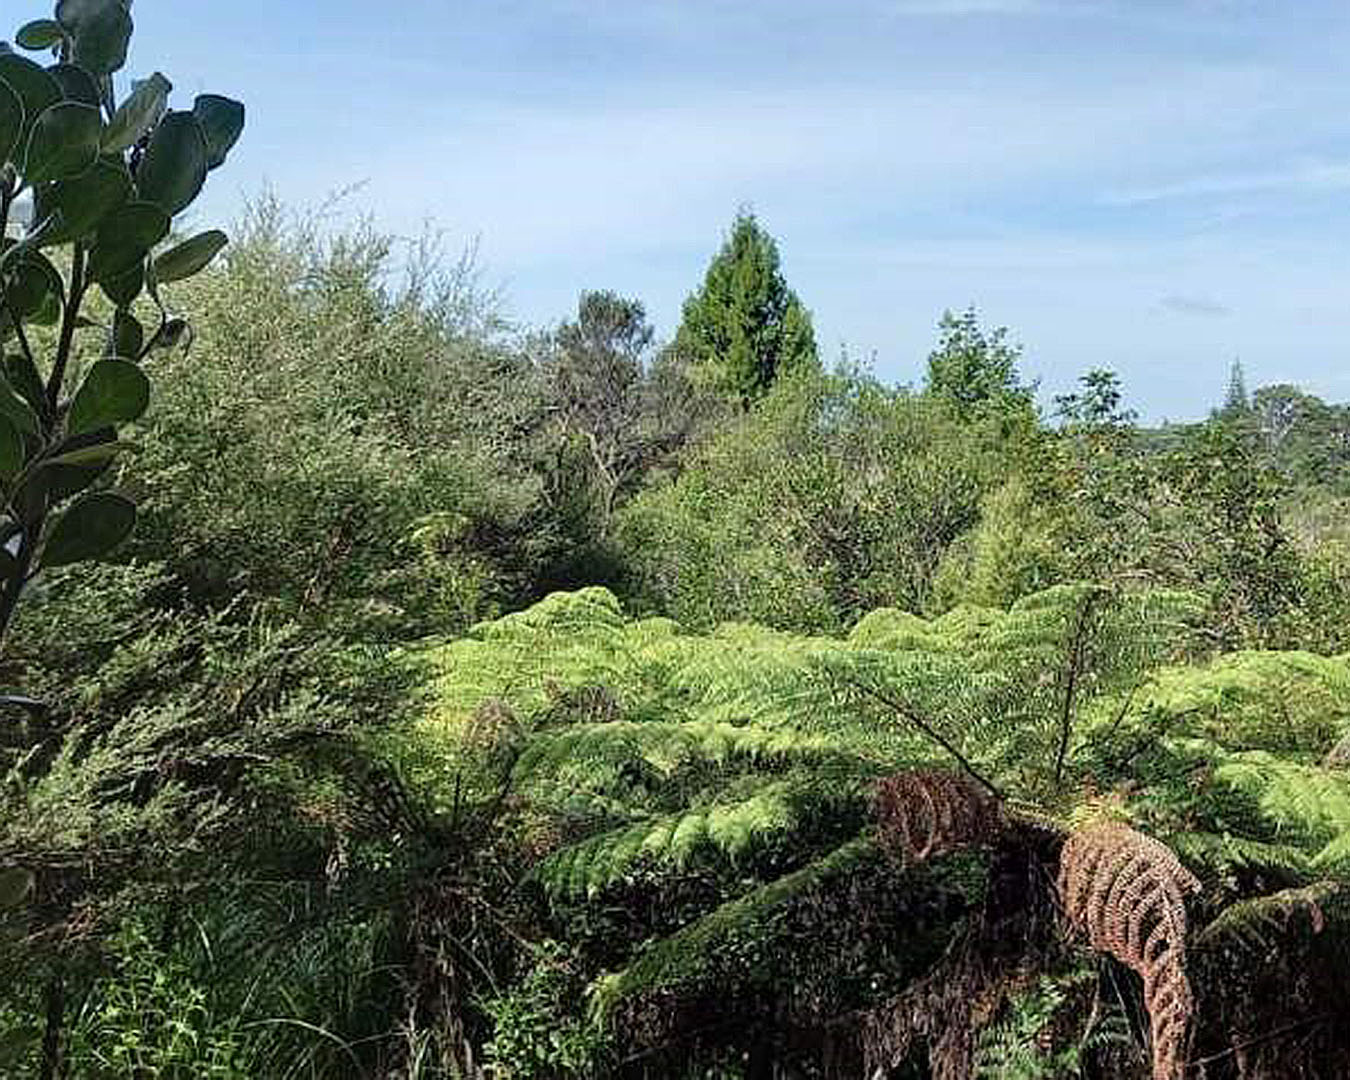 The glorious New Zealand bush is in fine fettle in Centennial Park.